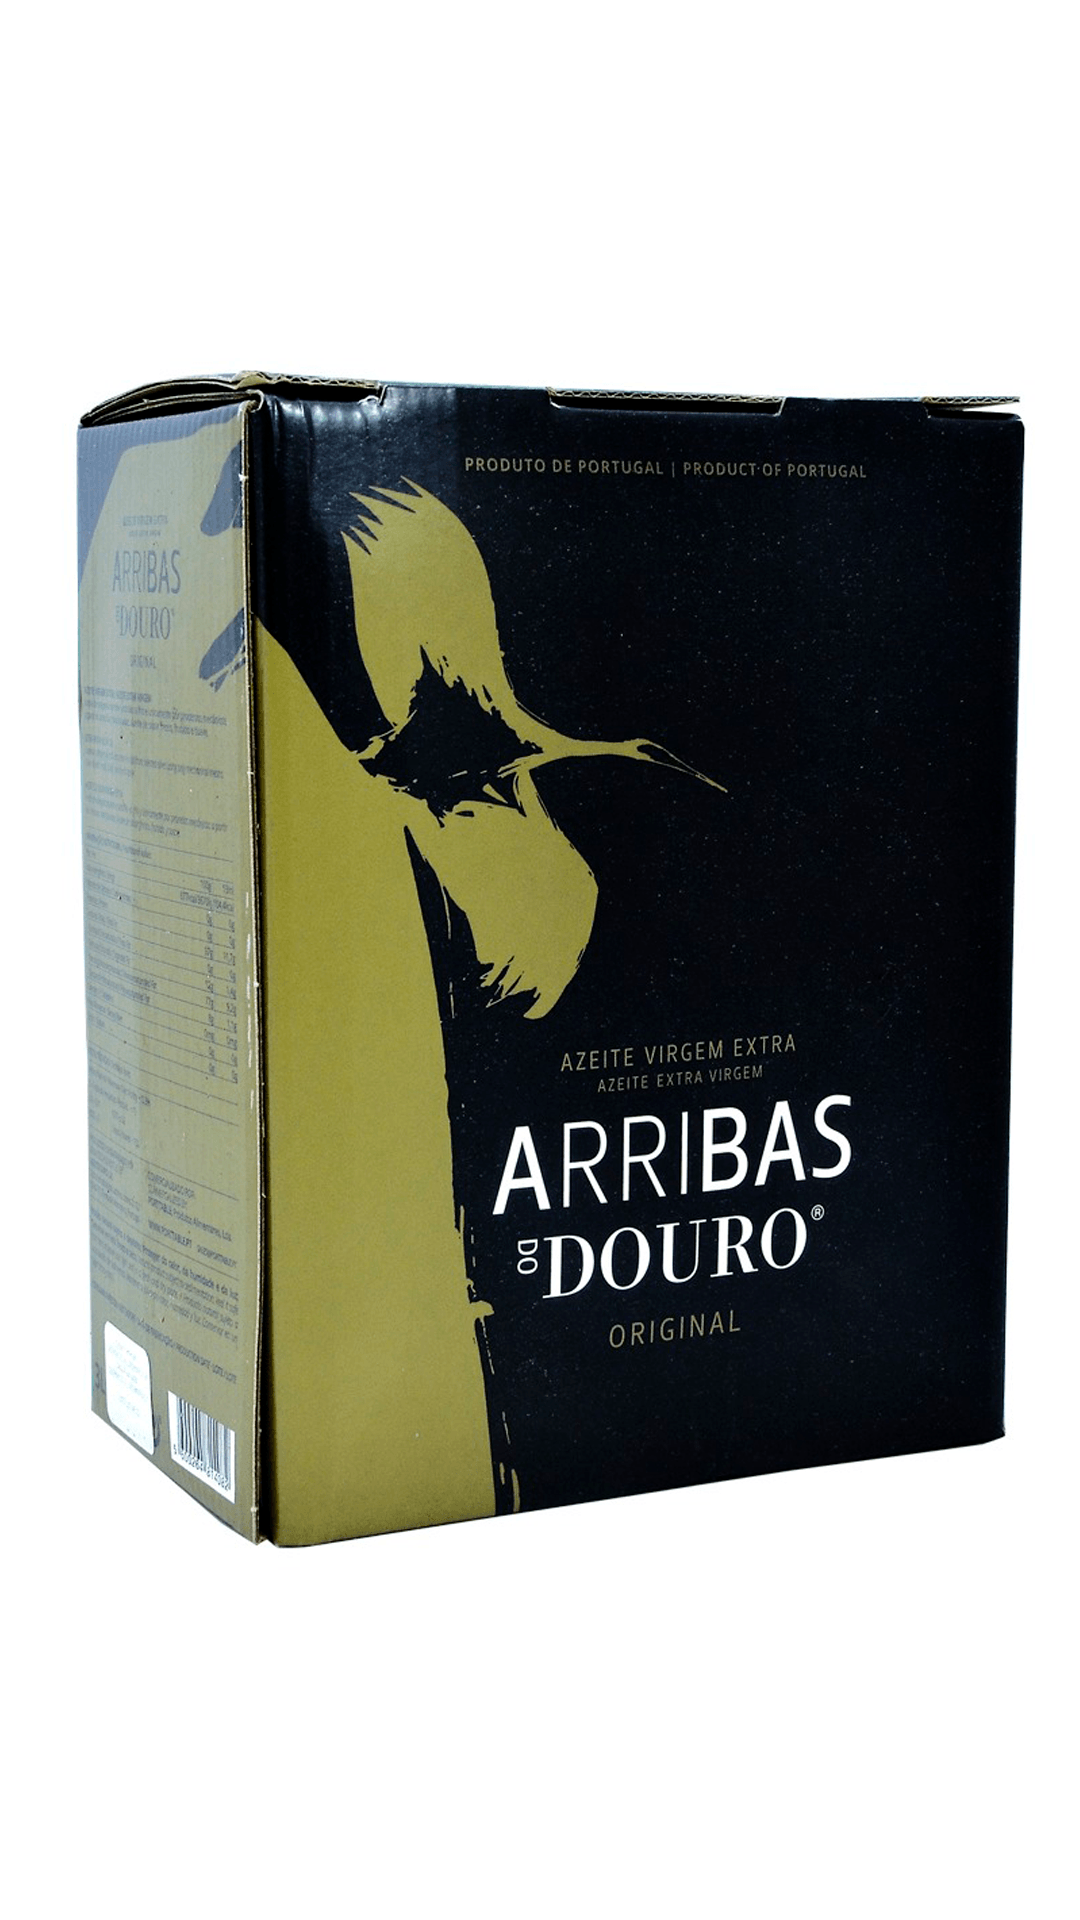 Arribas-do-Douro-Original-3L-Extra-Virgem